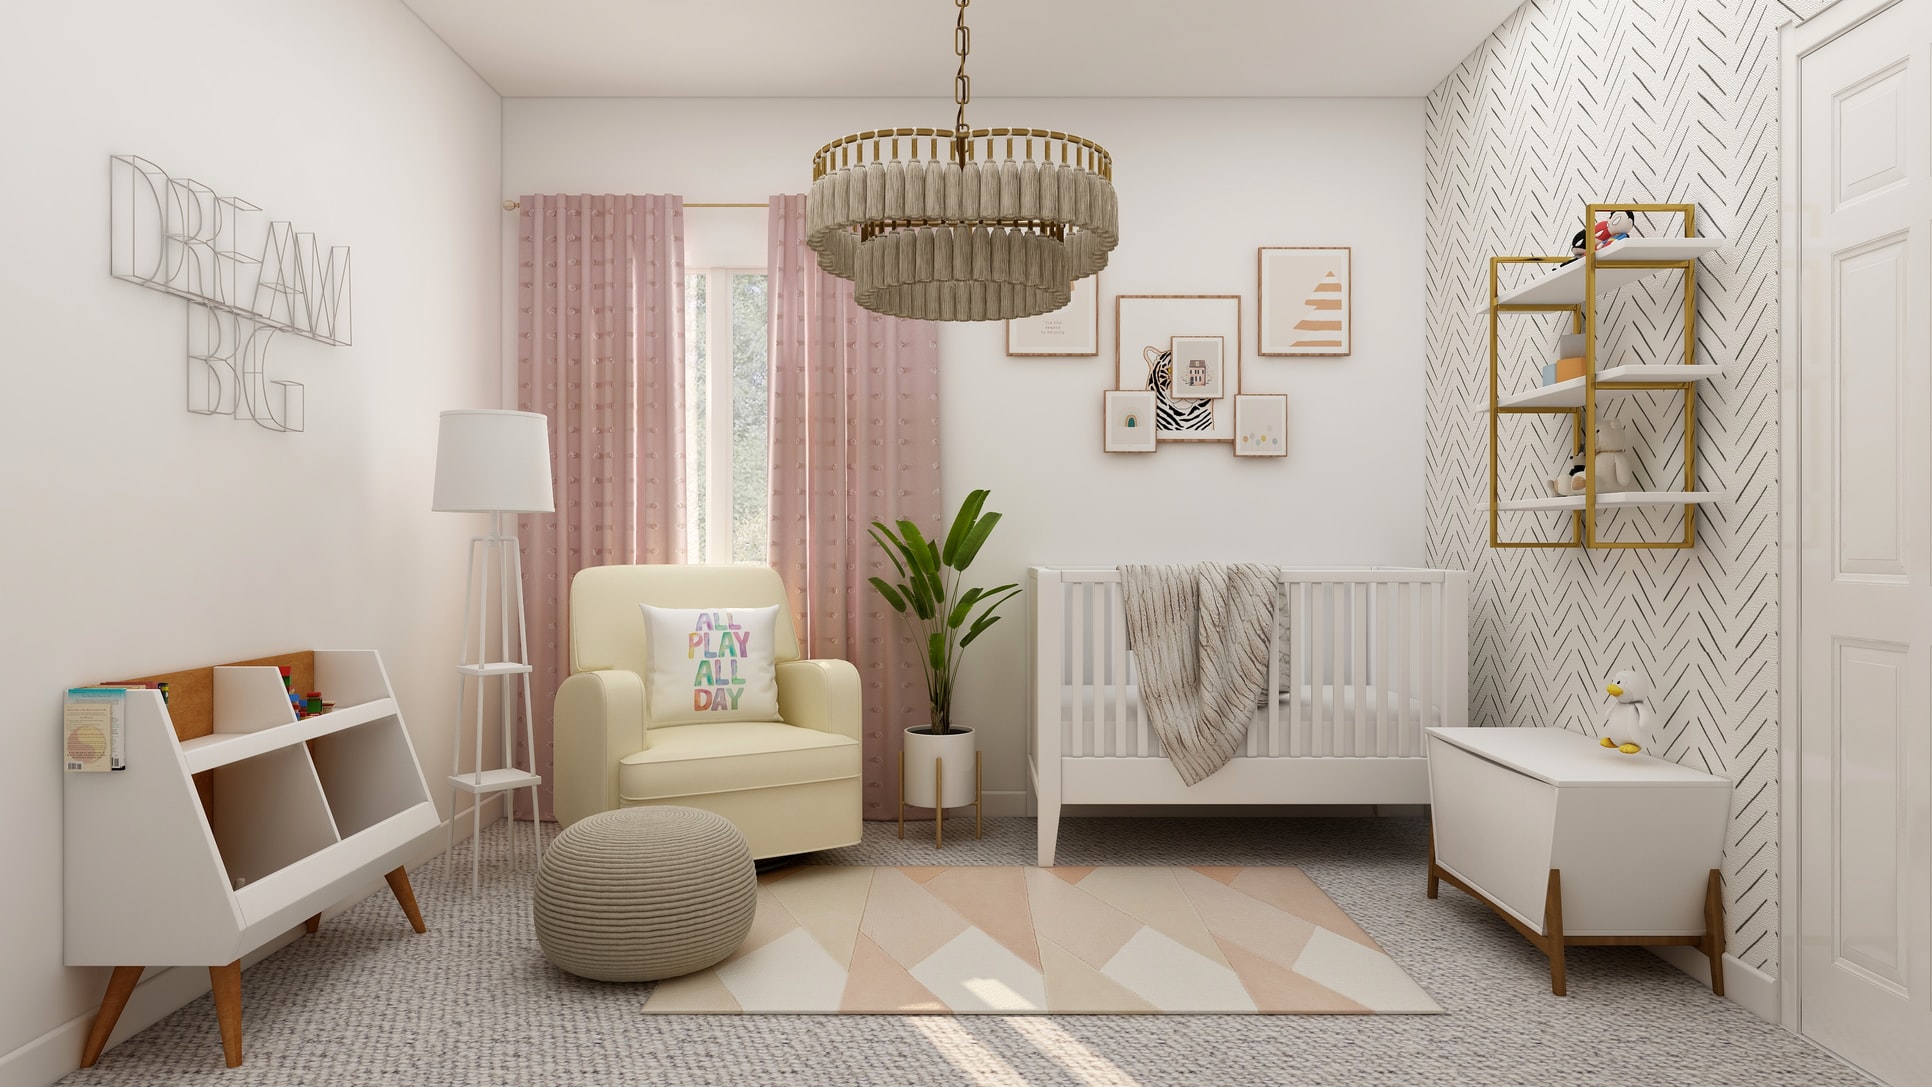 Children’s Bedroom Interior Design Tips